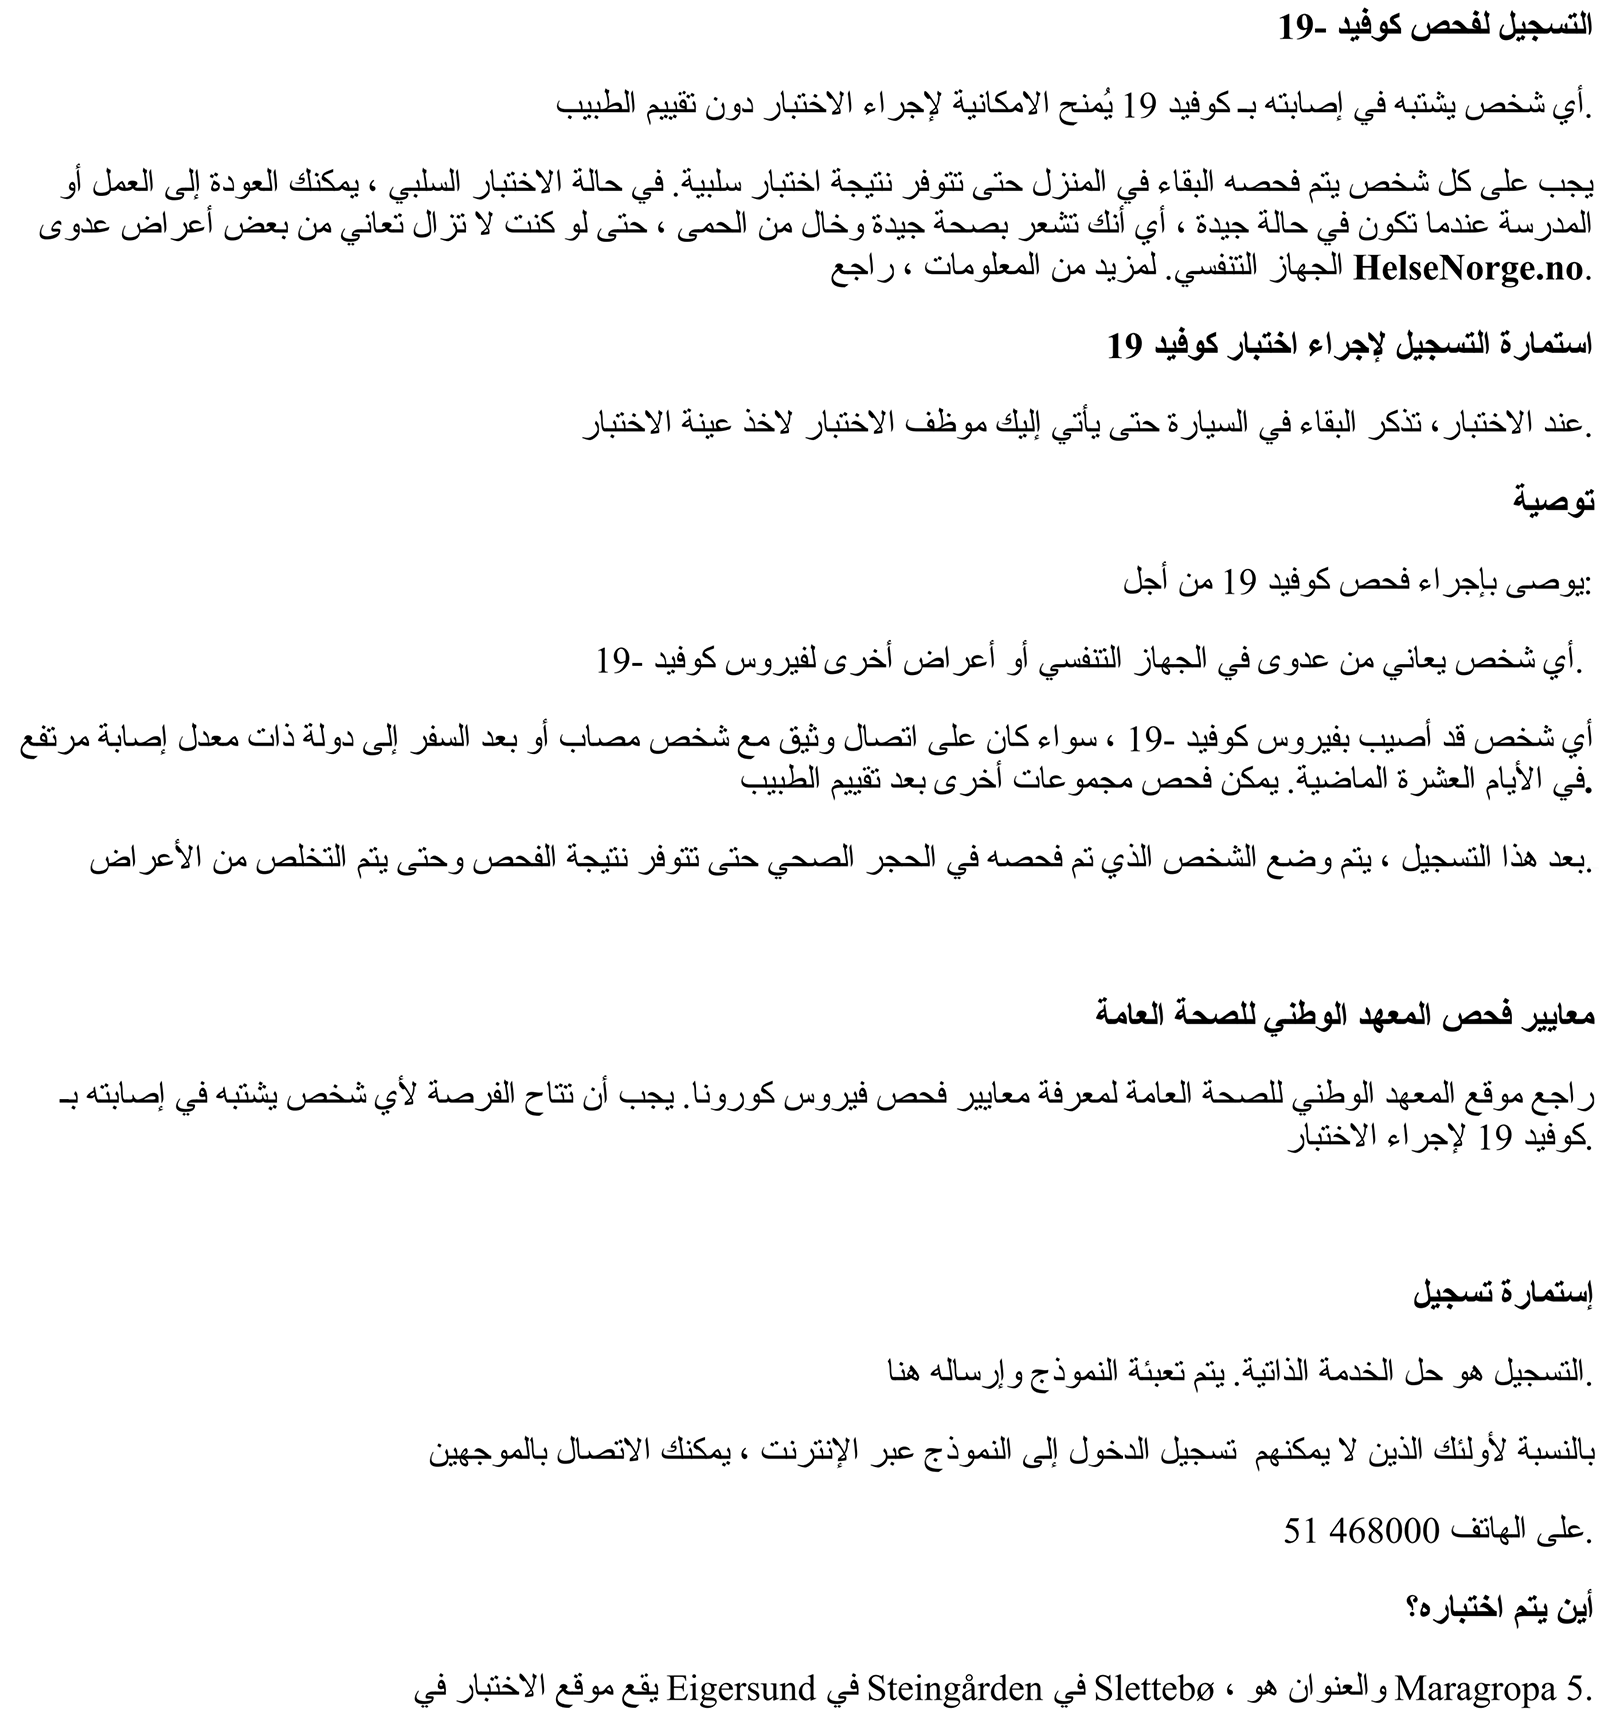 Informasjon på arabisk